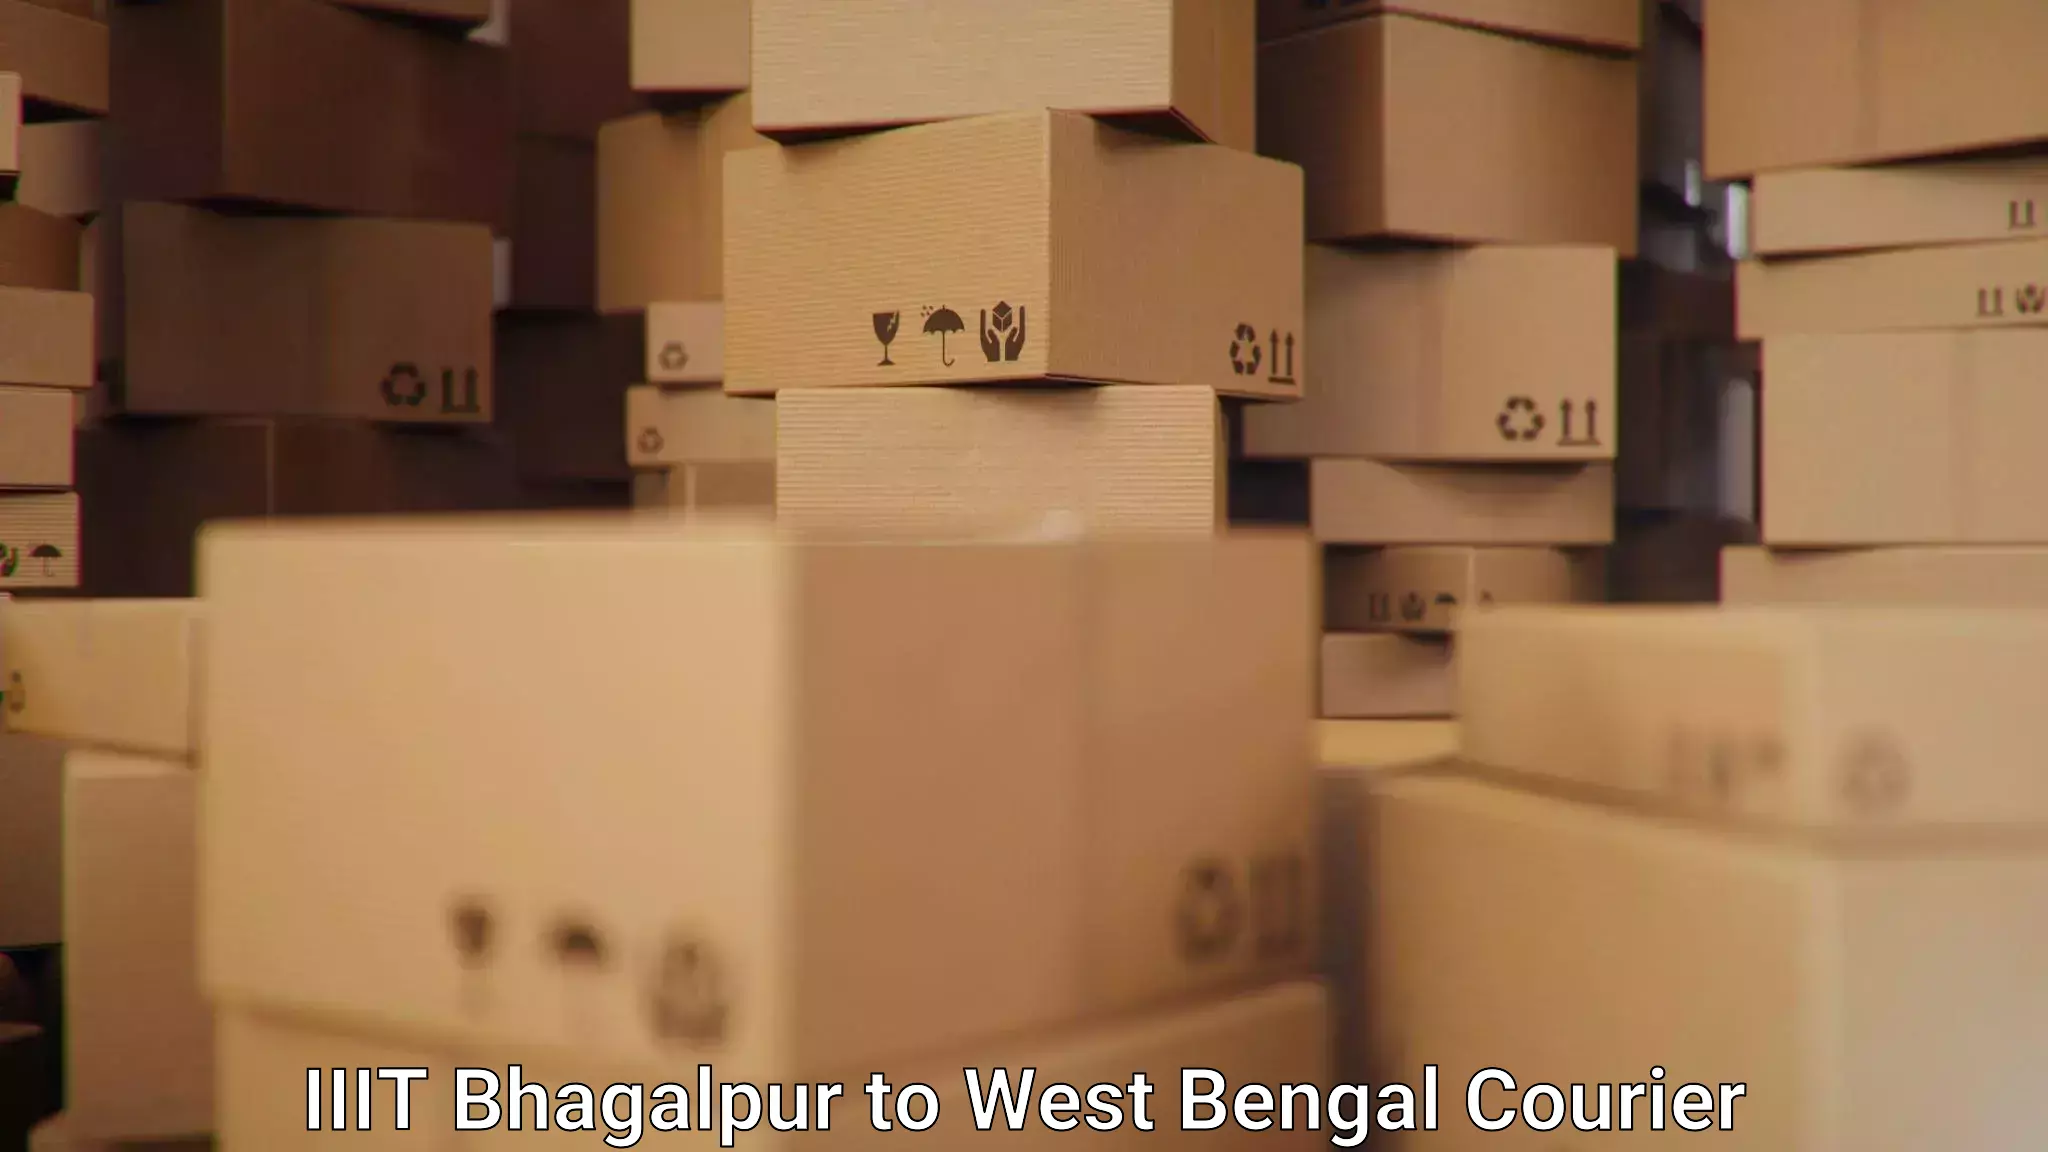 Express delivery capabilities IIIT Bhagalpur to Belda